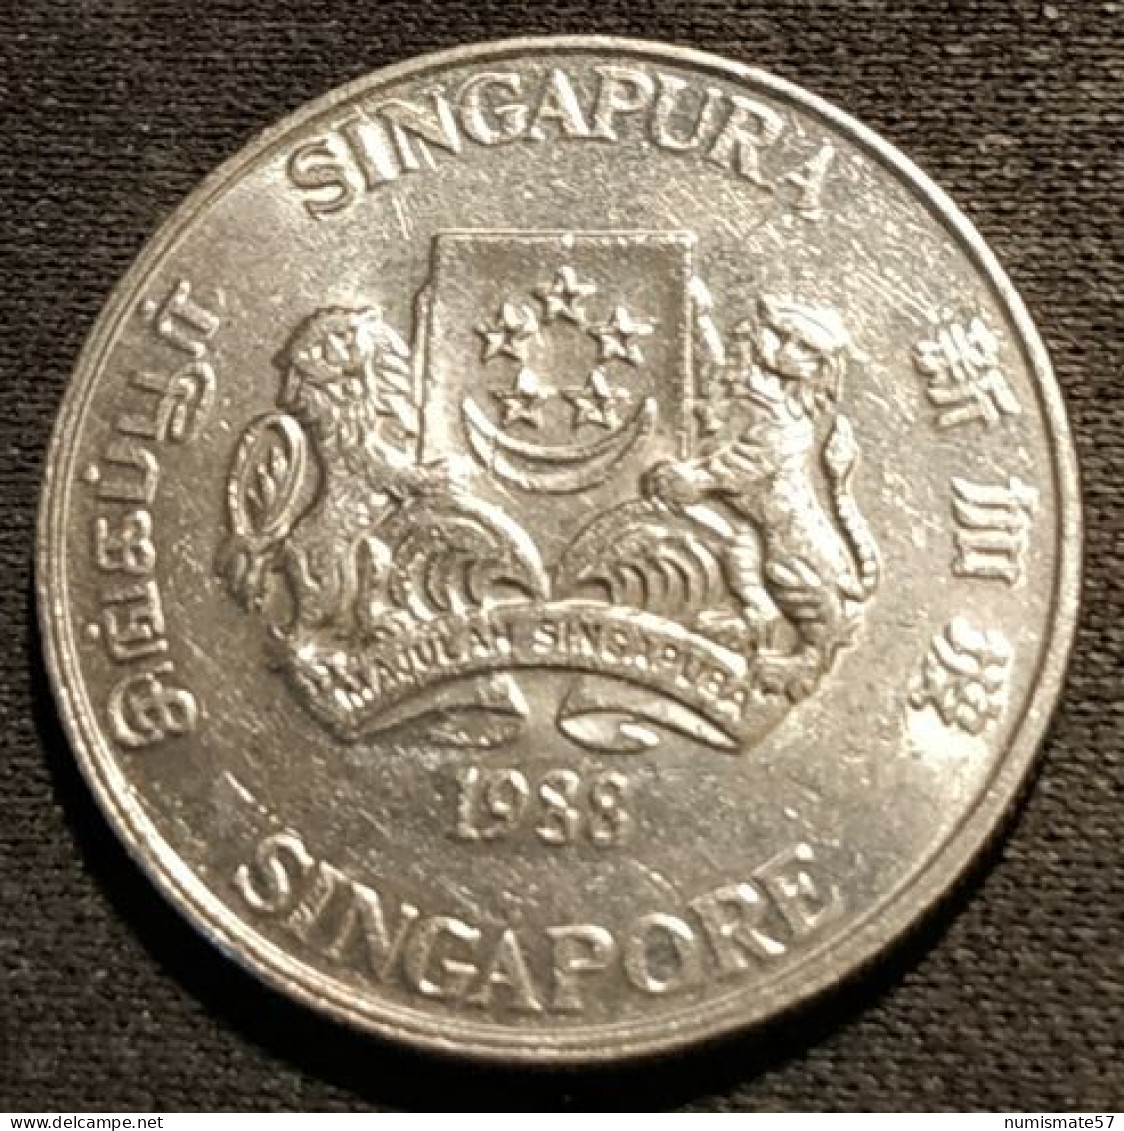 SINGAPOUR - SINGAPORE - 20 CENTS 1988 - KM 52 - ( Blason Haut ) - Singapore